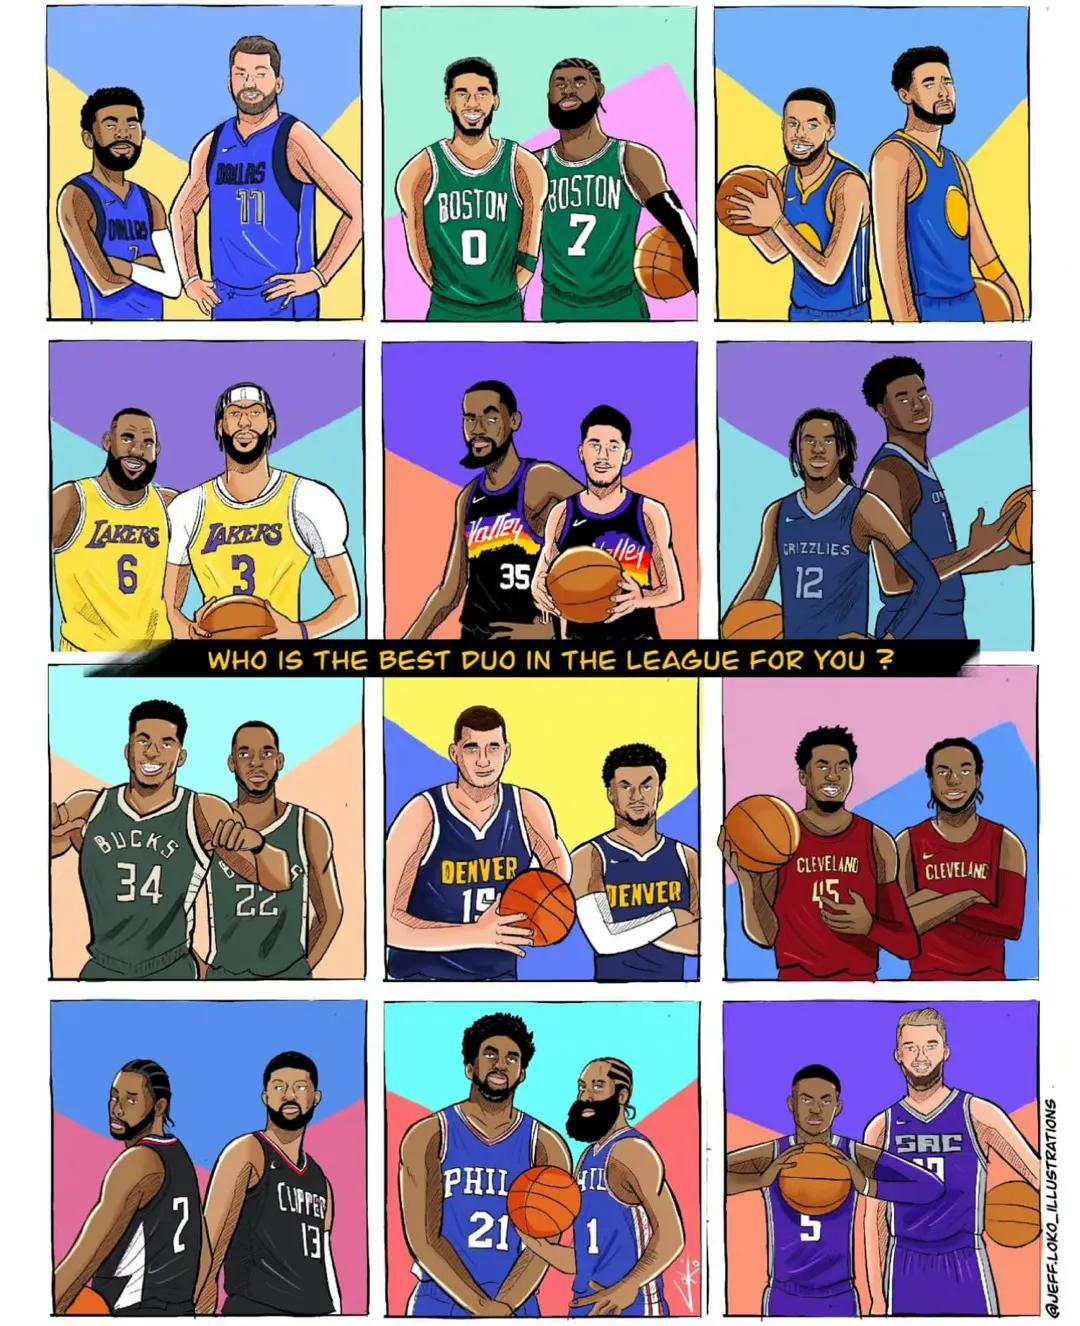 本赛季NBA最佳双人组合是哪组？詹眉？登帝？卡椒？水花？还是东欧？

杜行侠：东(1)